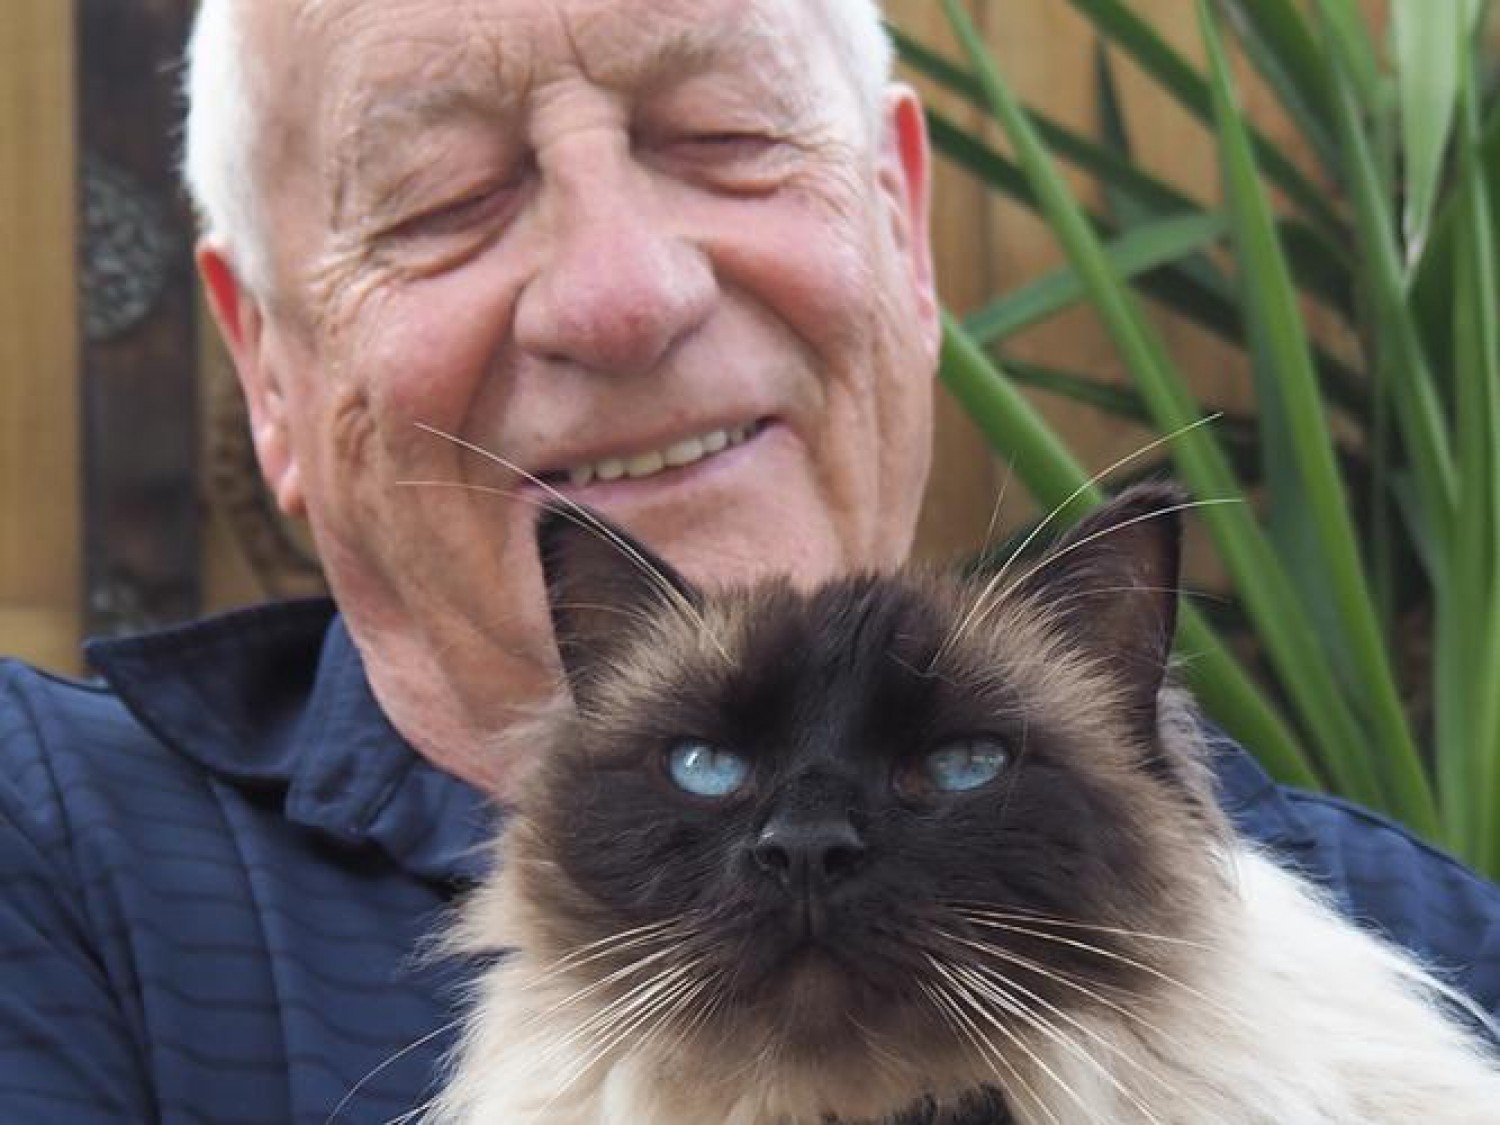 Meglepő tények: így hatnak a macskák az idős emberekre